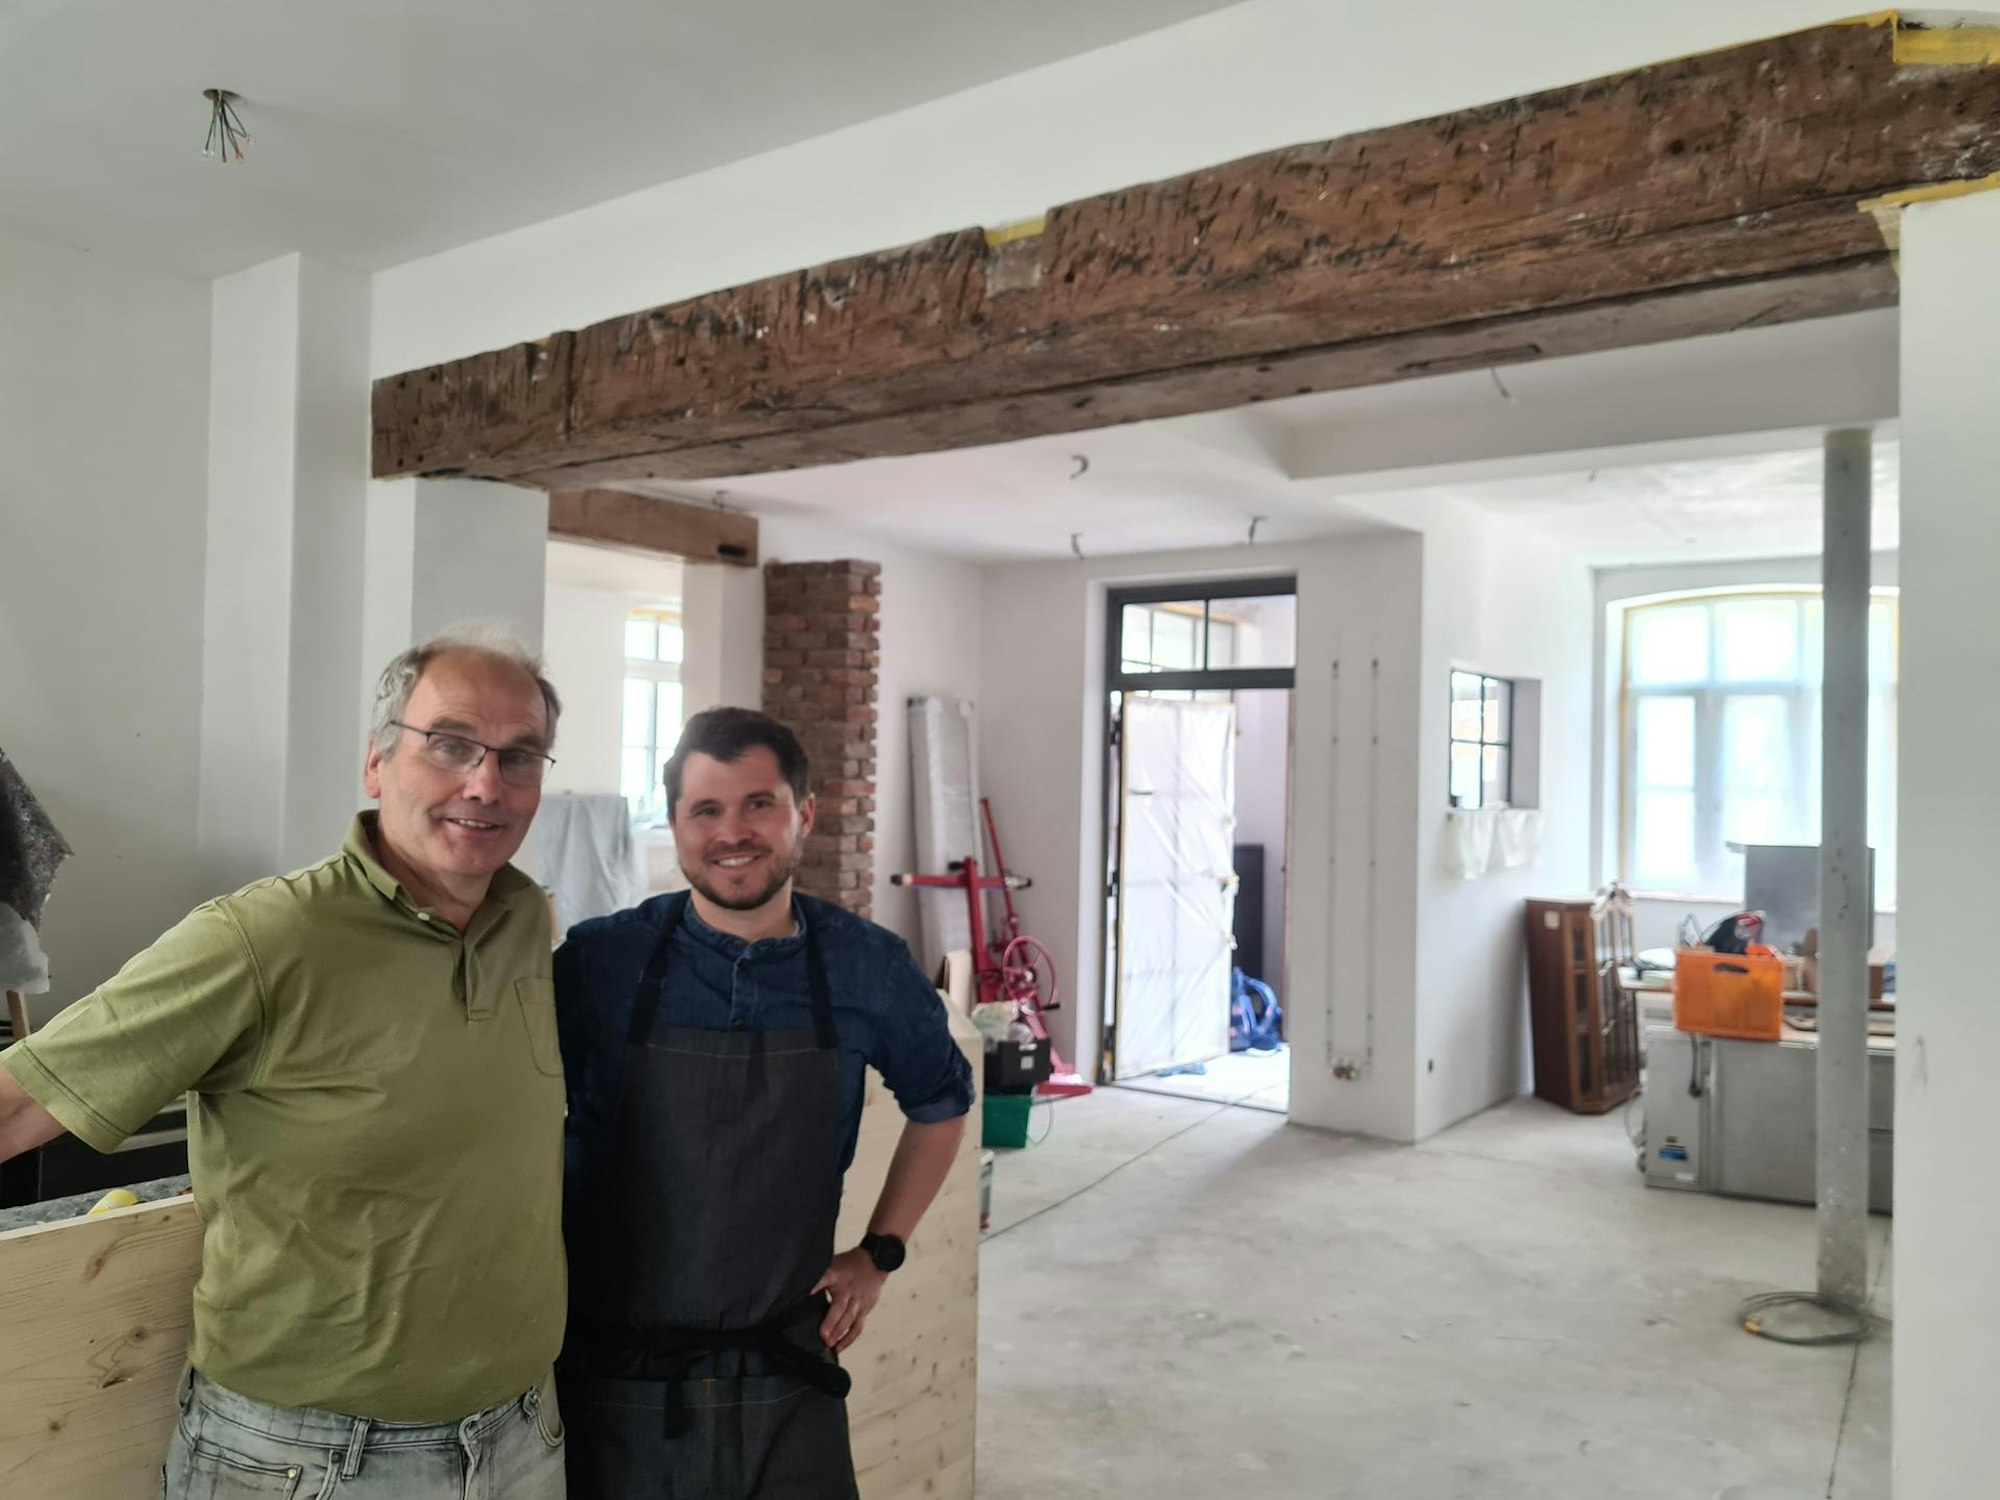 Inhaber Bernd Schmitz-Lothmann und Pächter Christof Hölscher wollen dem alten Wirtshaus neues Leben einhauchen.